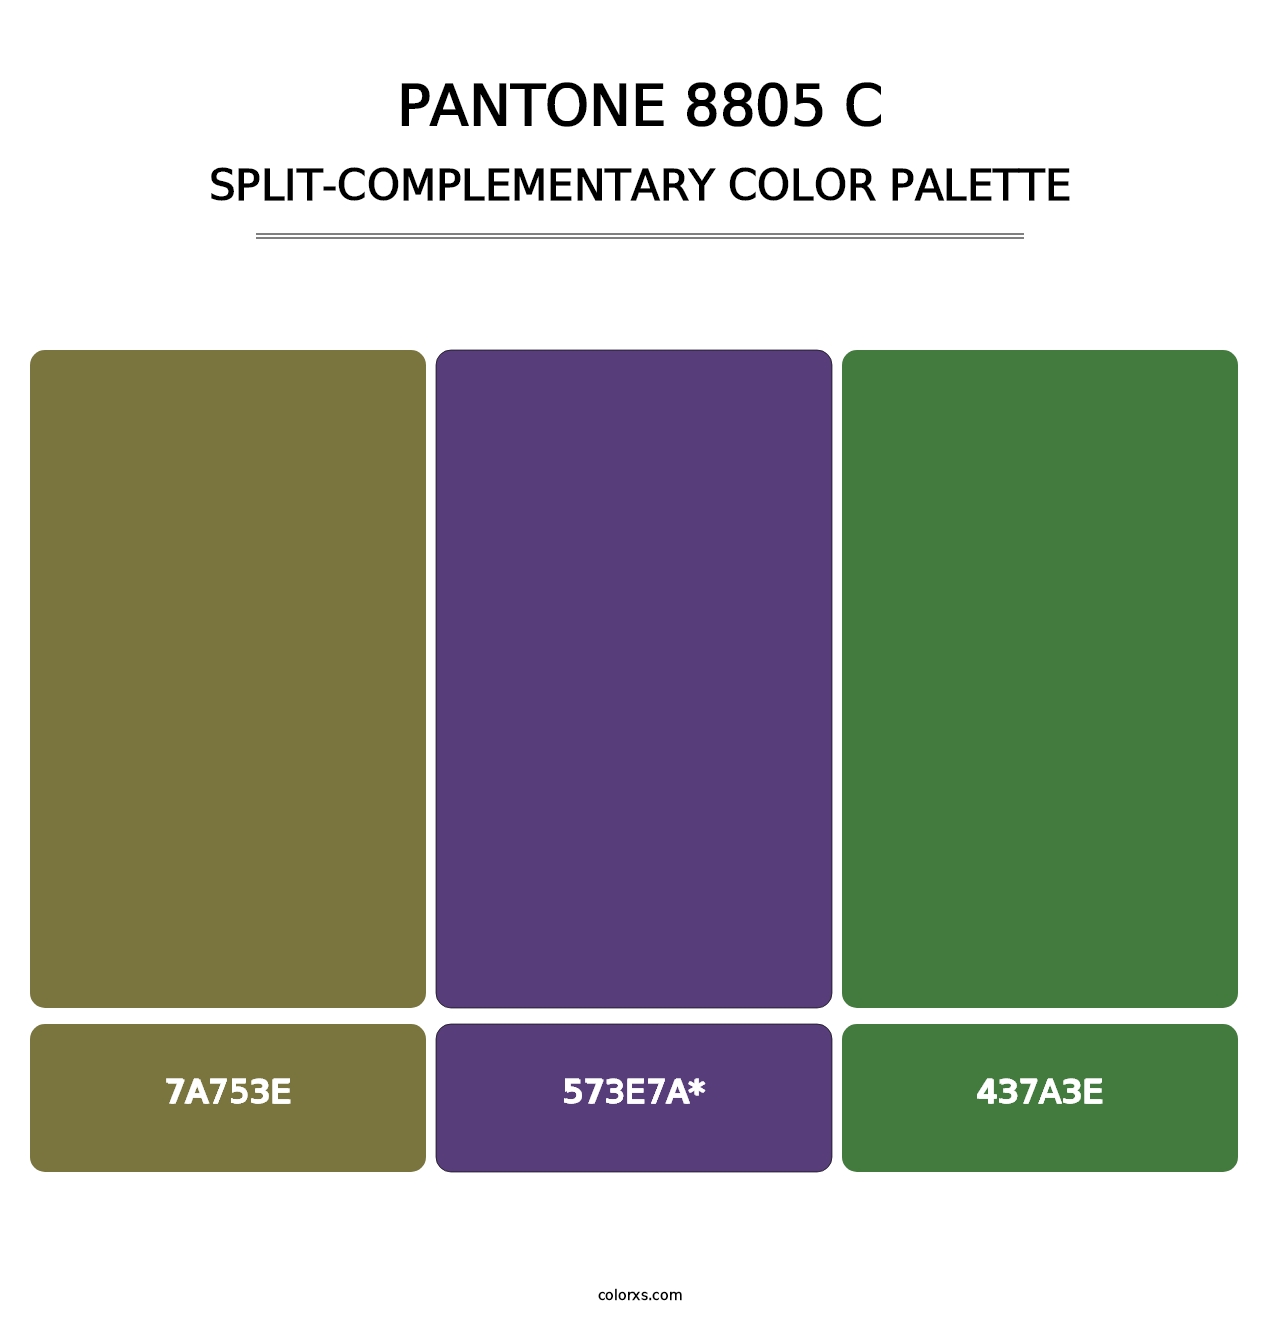 PANTONE 8805 C - Split-Complementary Color Palette